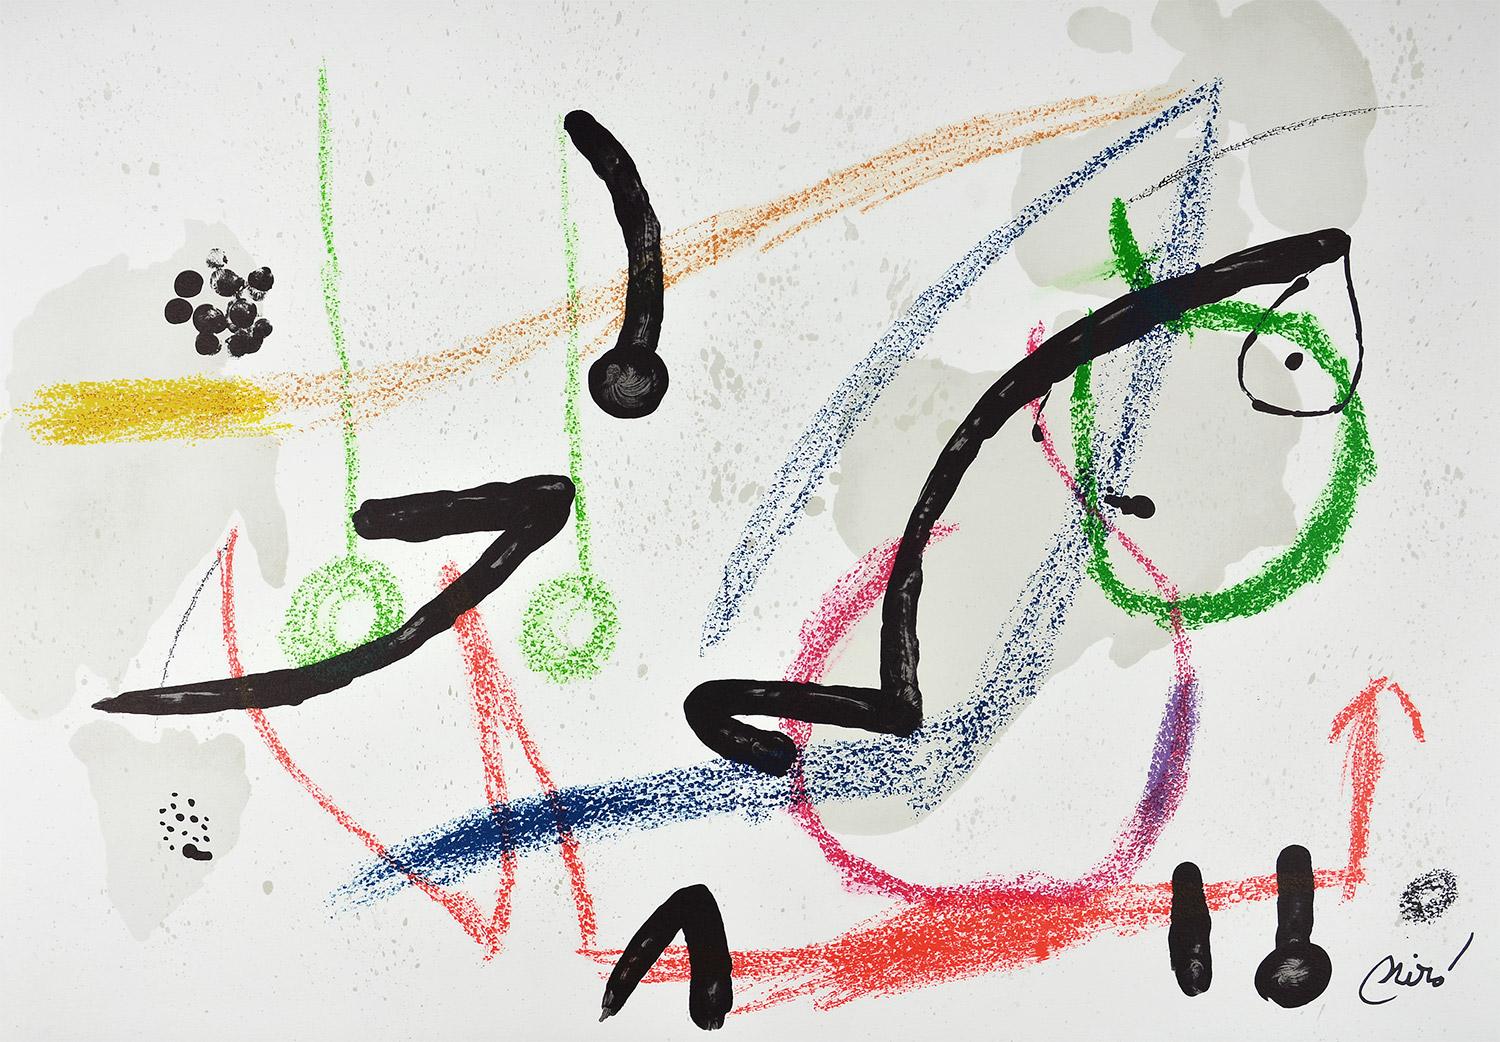 Joan Miró - Maravillas con variaciones acrósticas en el jardín de Miró VII
Date de création : 1975
Support : Lithographie sur papier Gvarro
Édition : 1500
Taille : 49,5 x 71 cm
Observations : Lithographie sur plaque de papier Gvarro signée. Édité